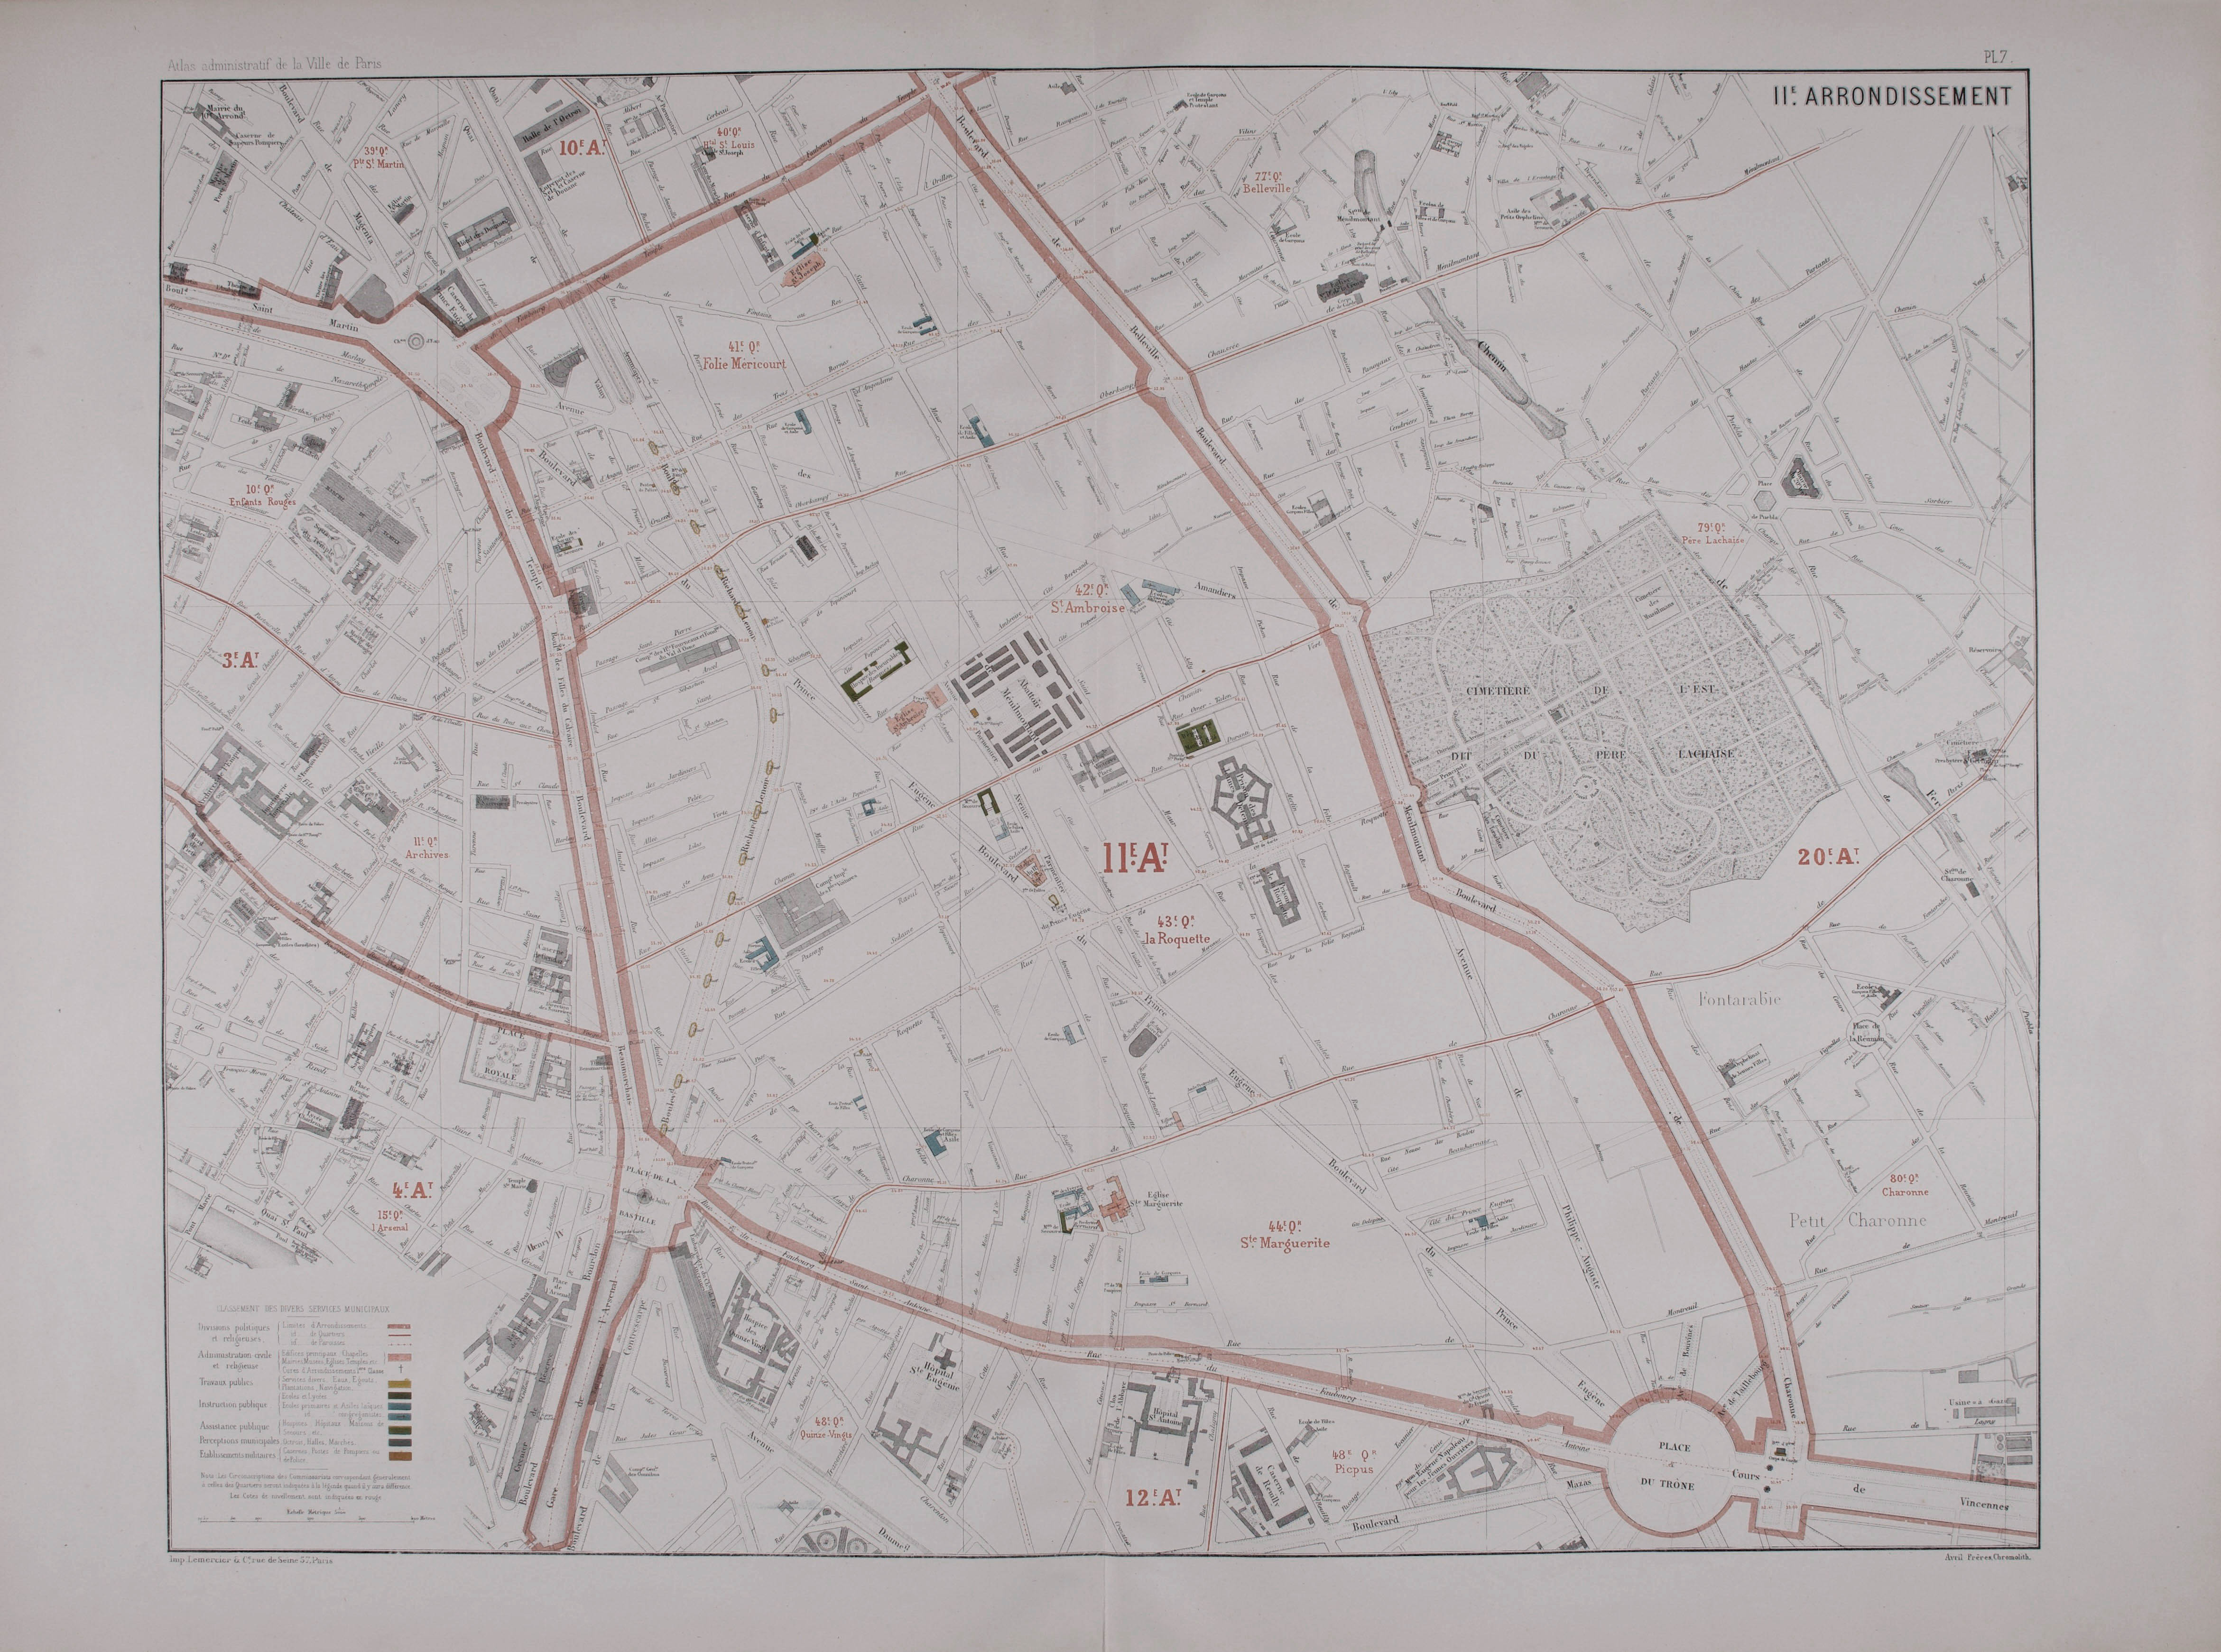 Plan du 11e arrondissement © Cité de l'architecture & du patrimoine/Musée des Monuments français